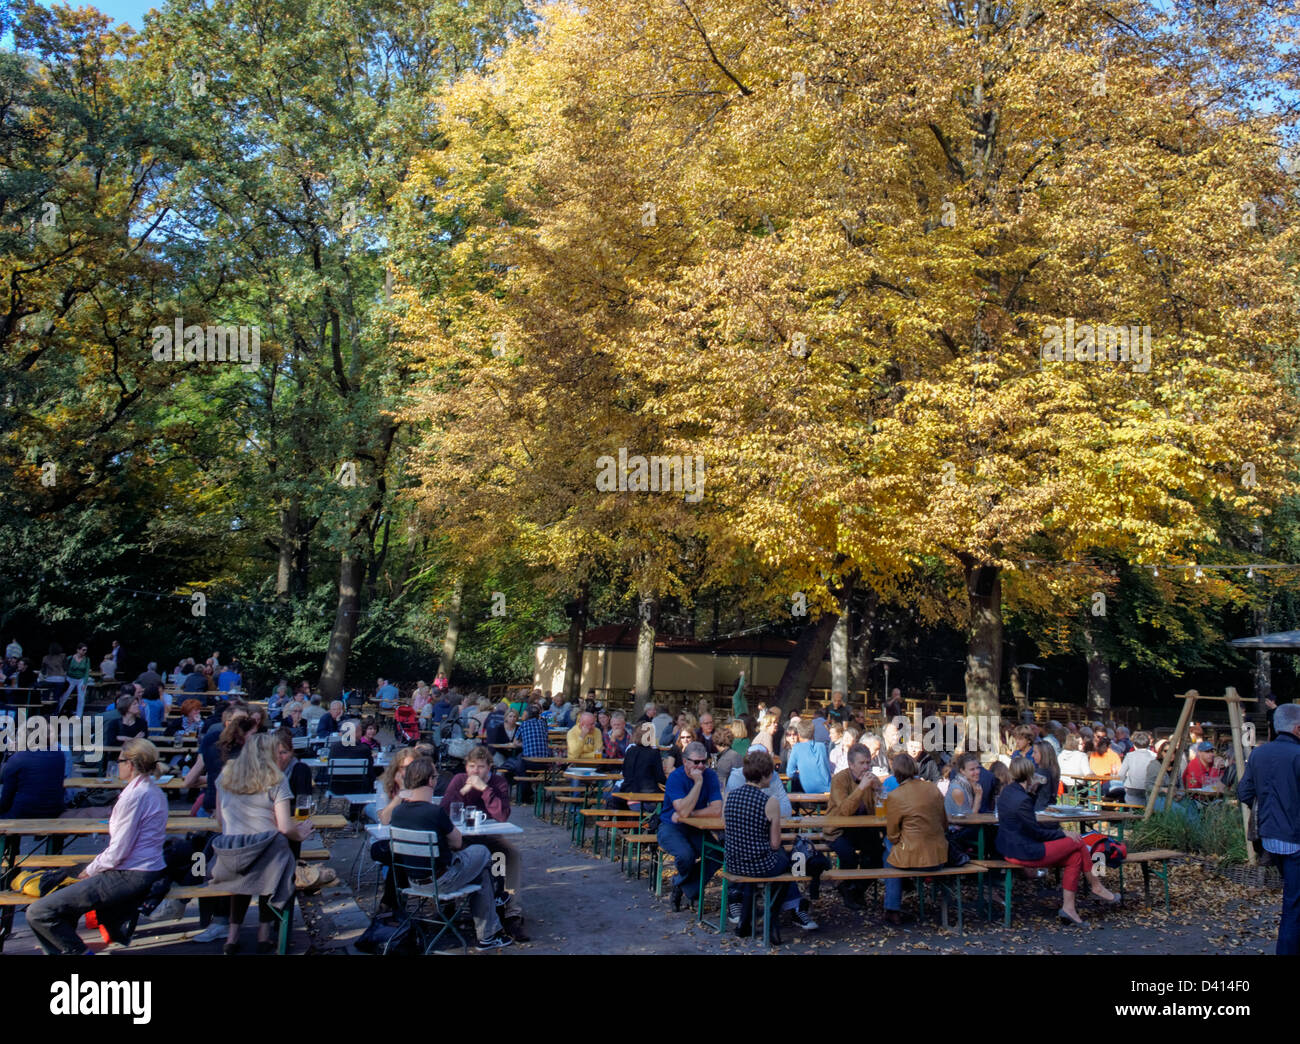 Cafe and beer garden Am Neuen See in Tiergarten in autumn, Berlin, Germany Stock Photo